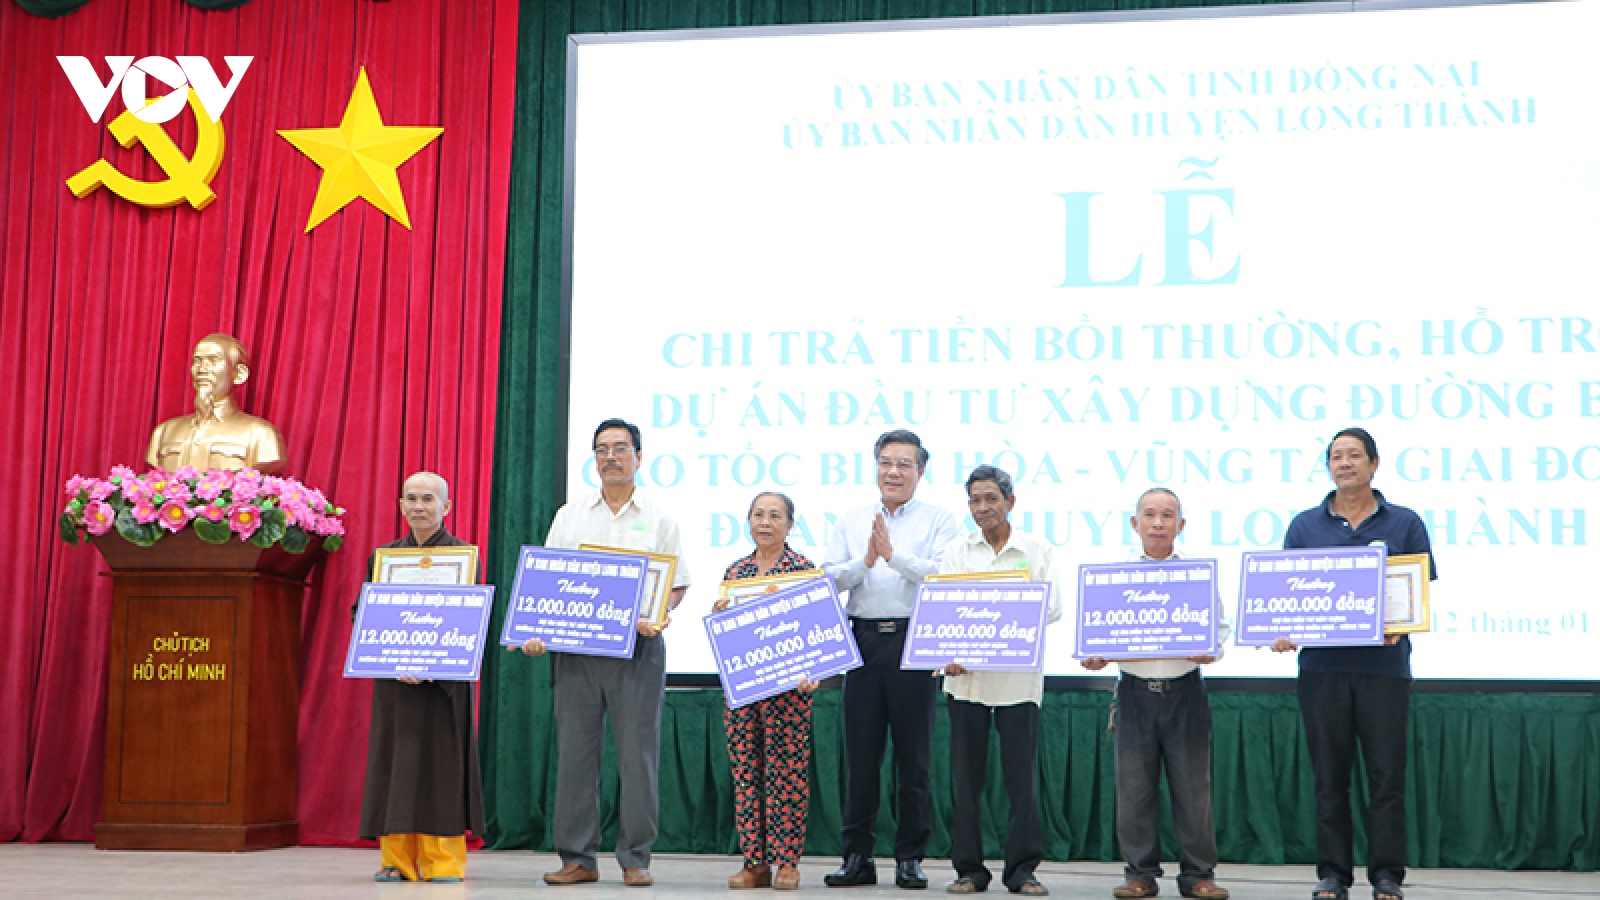 Các hộ dân đầu tiên nhận tiền bồi thường dự án cao tốc Biên Hoà - Vũng Tàu